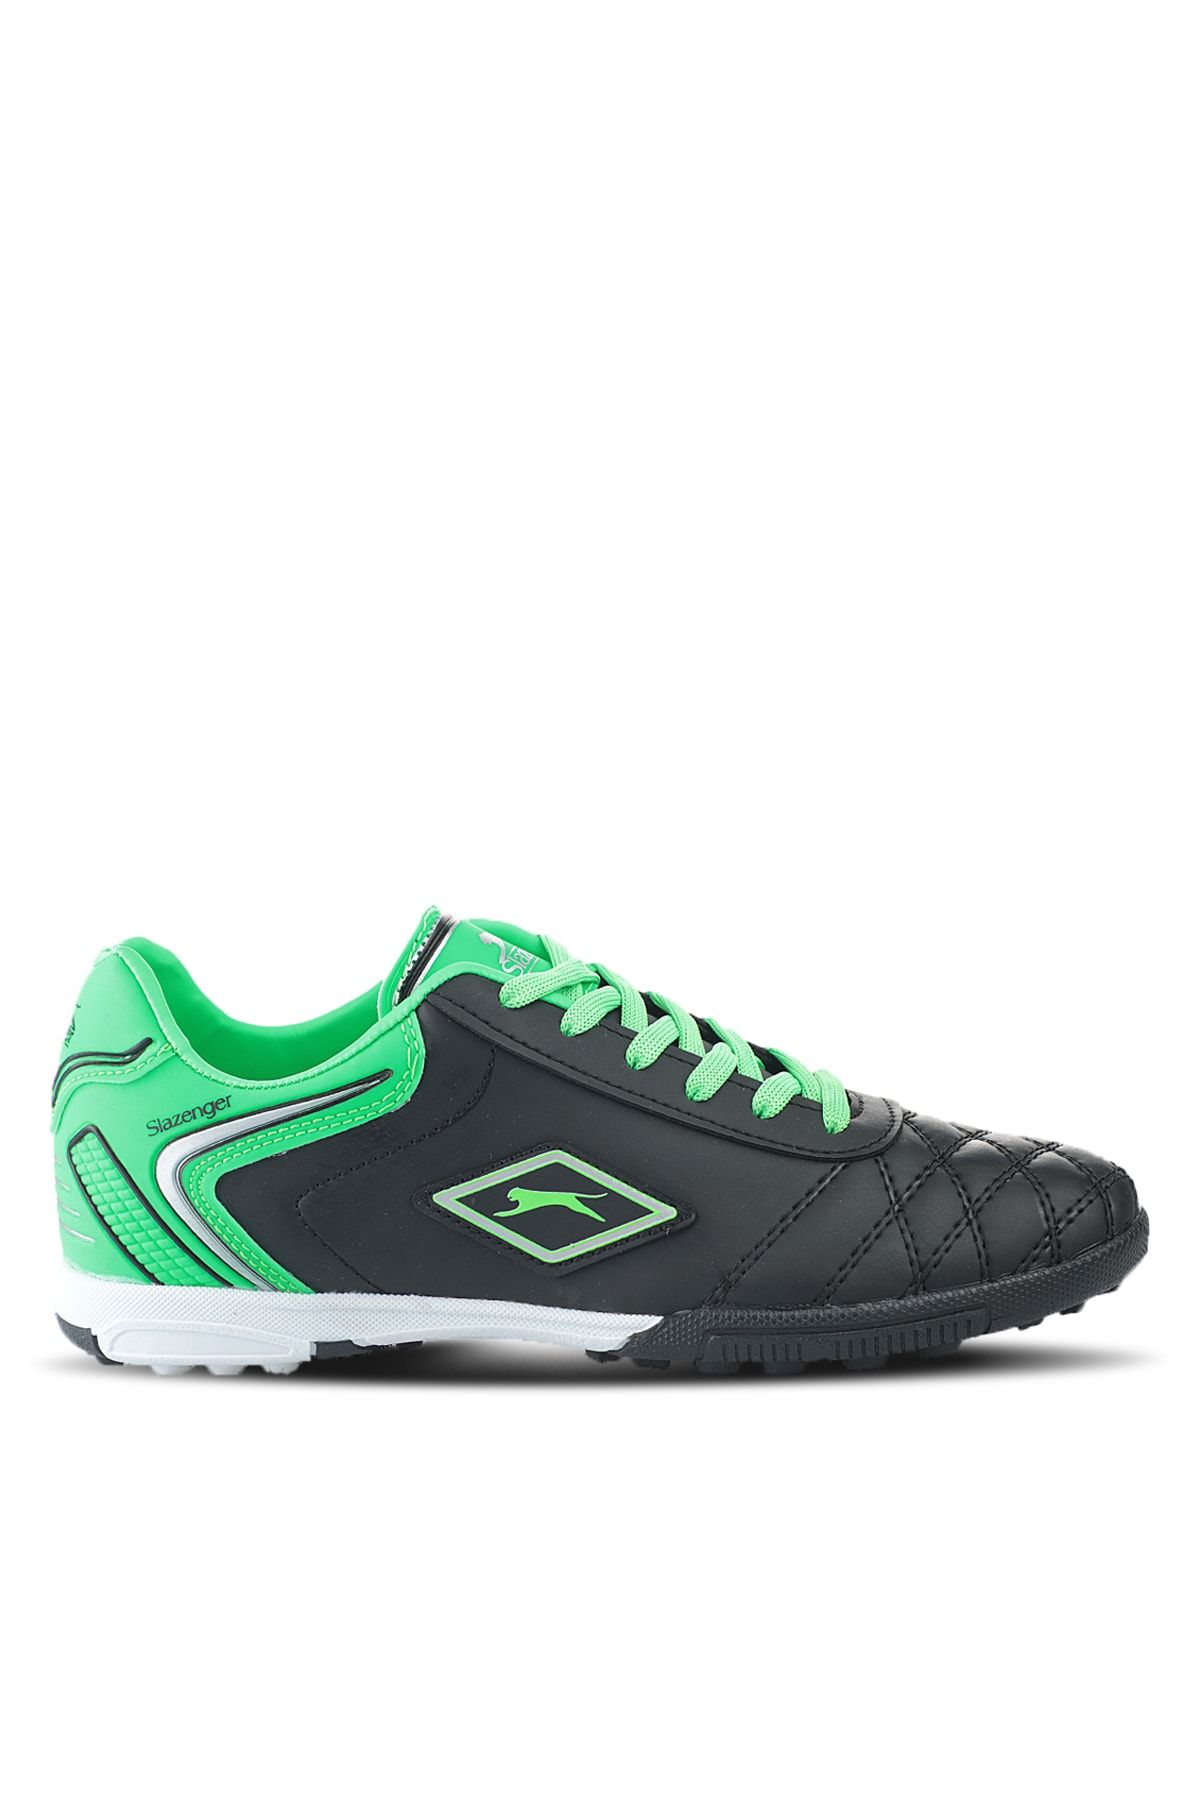 Slazenger Hugo Halısaha Futbol Erkek Krampon Ayakkabı Siyah / Yeşil